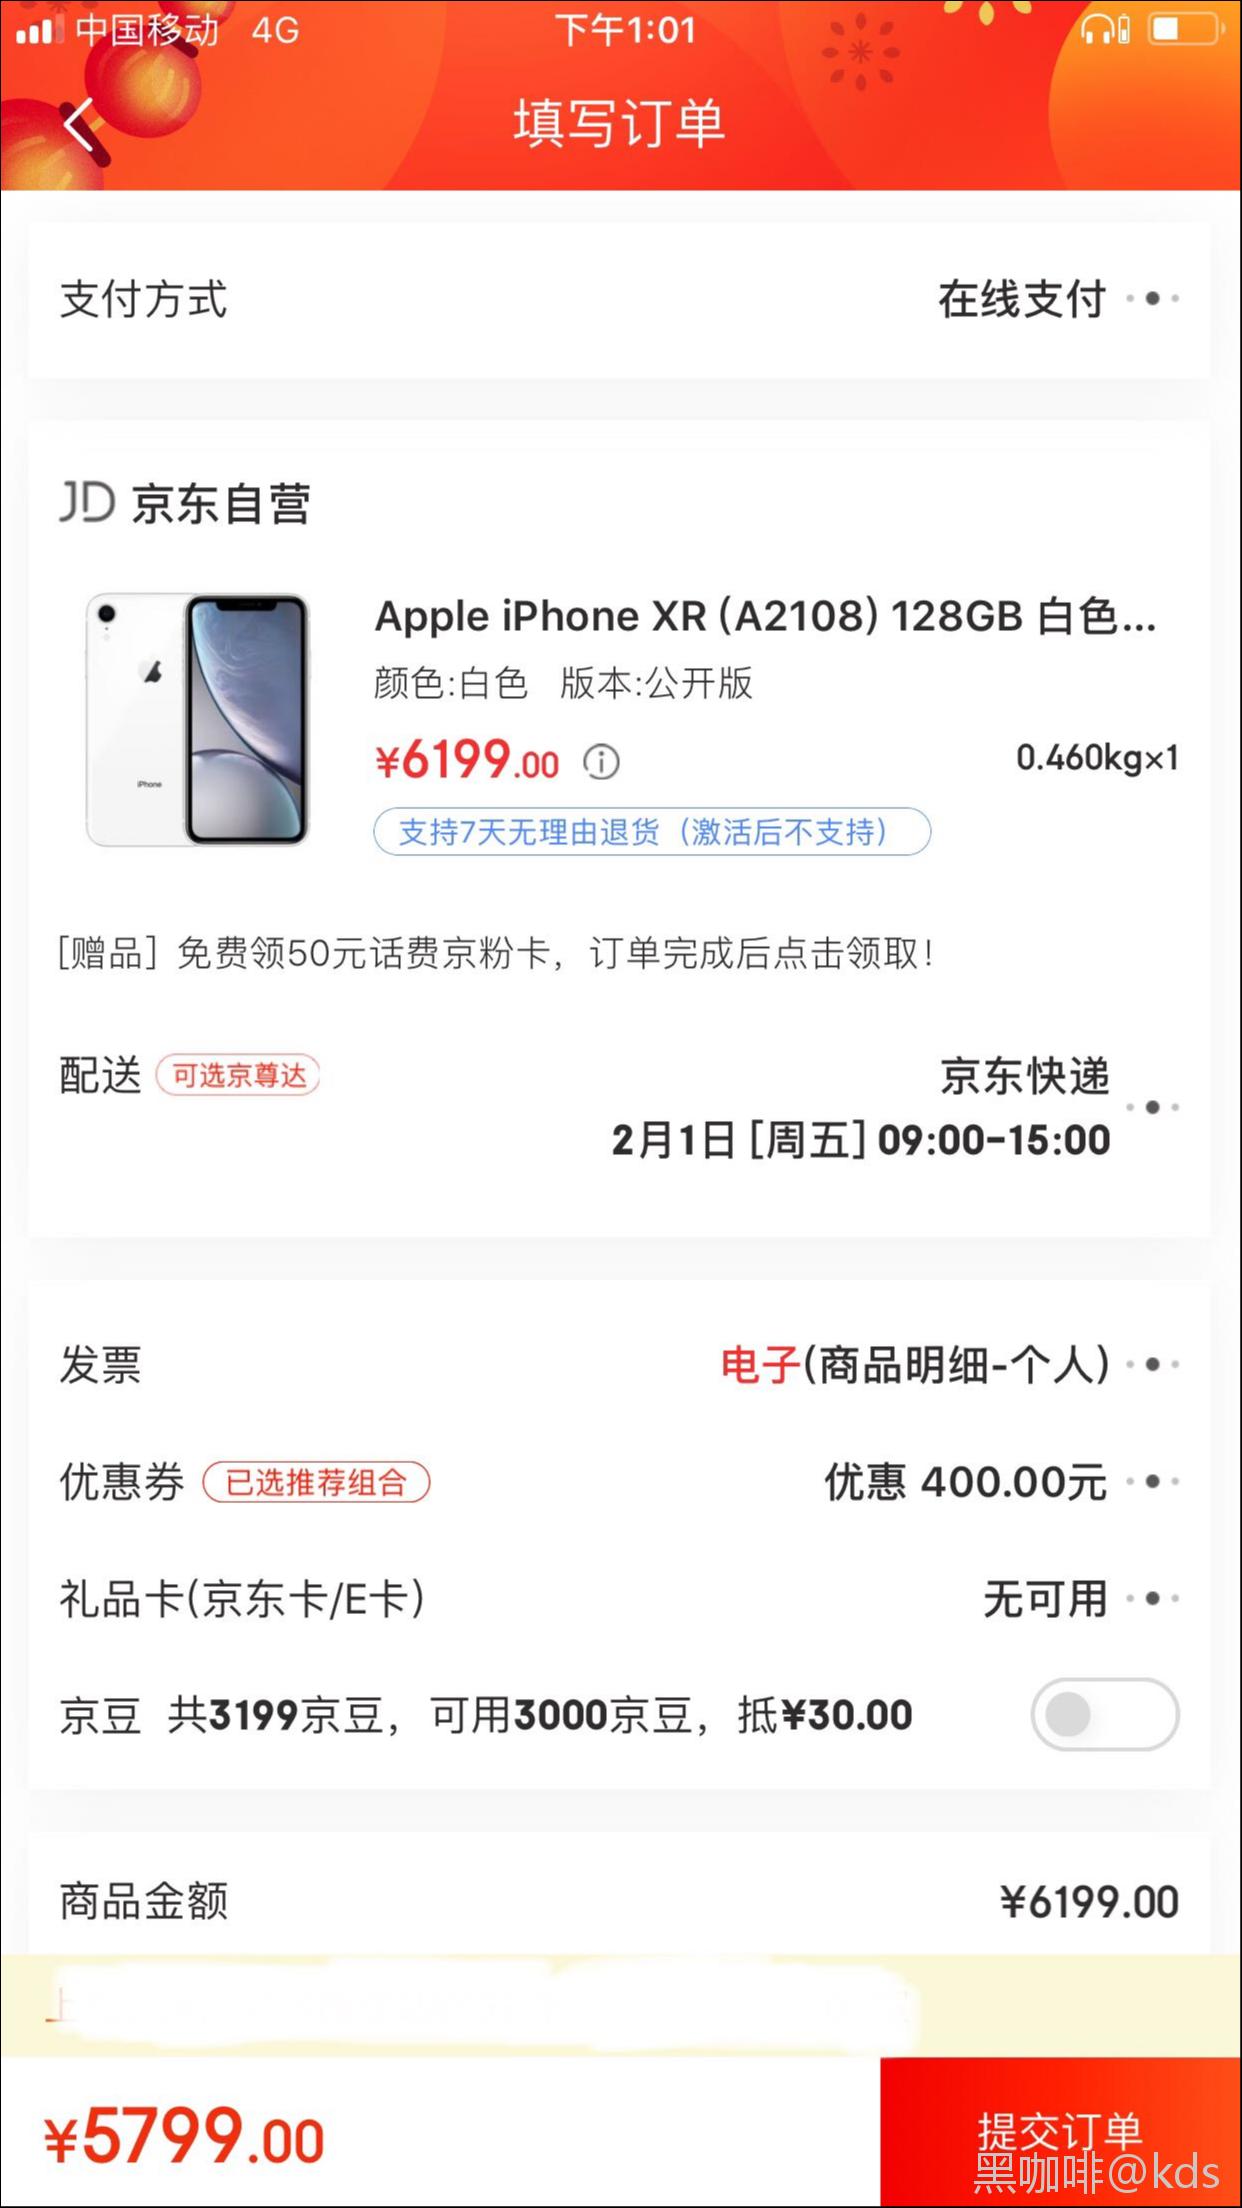 iphonex官方价格表图片